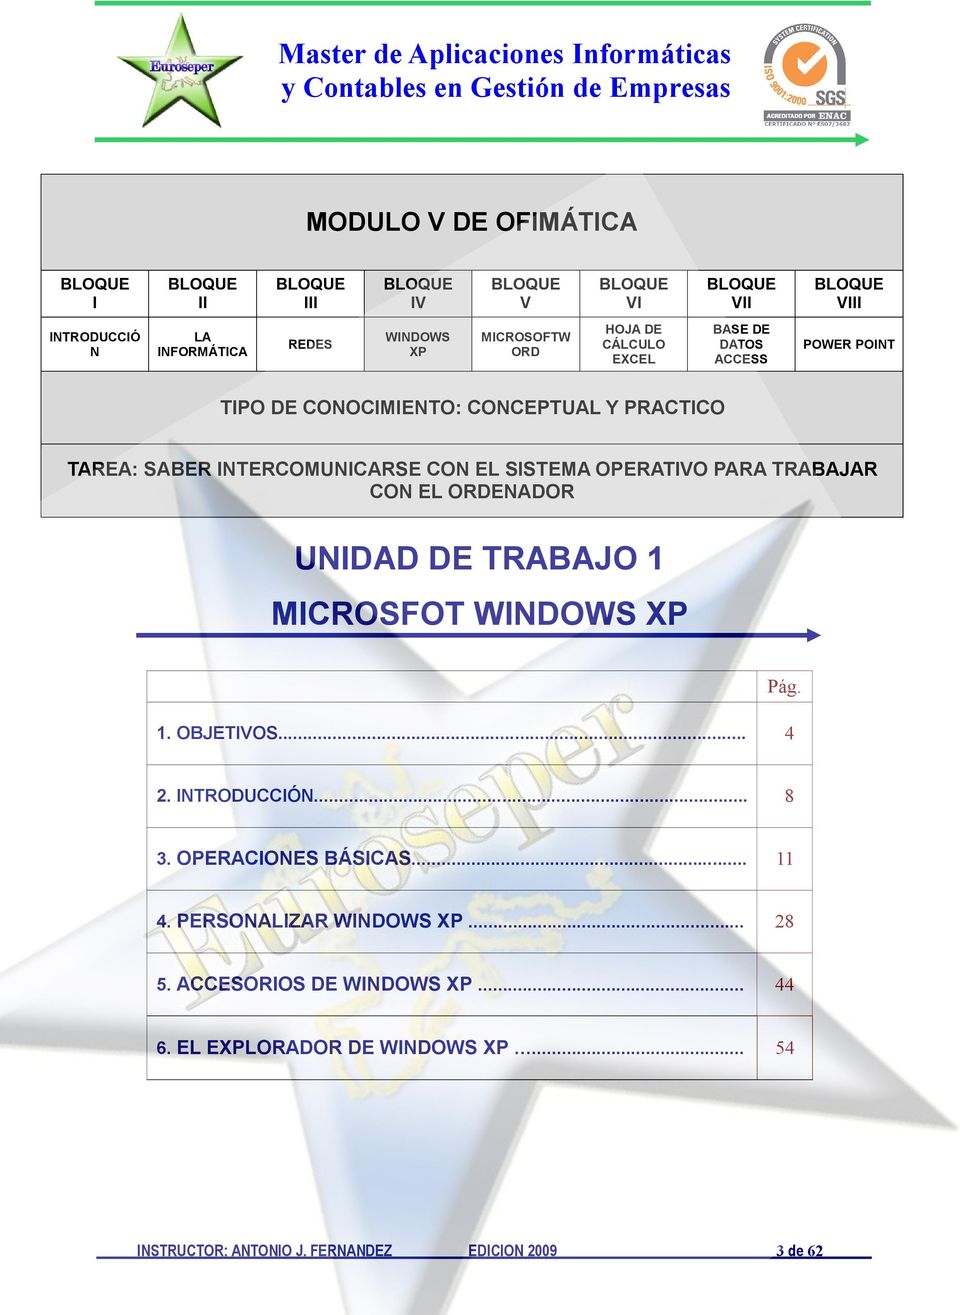 SISTEMA OPERATIVO PARA TRABAJAR CON EL ORDENADOR UNIDAD DE TRABAJO 1 MICROSFOT WINDOWS XP 1. OBJETIVOS... 4 Pág. 2. INTRODUCCIÓN... 8 3.